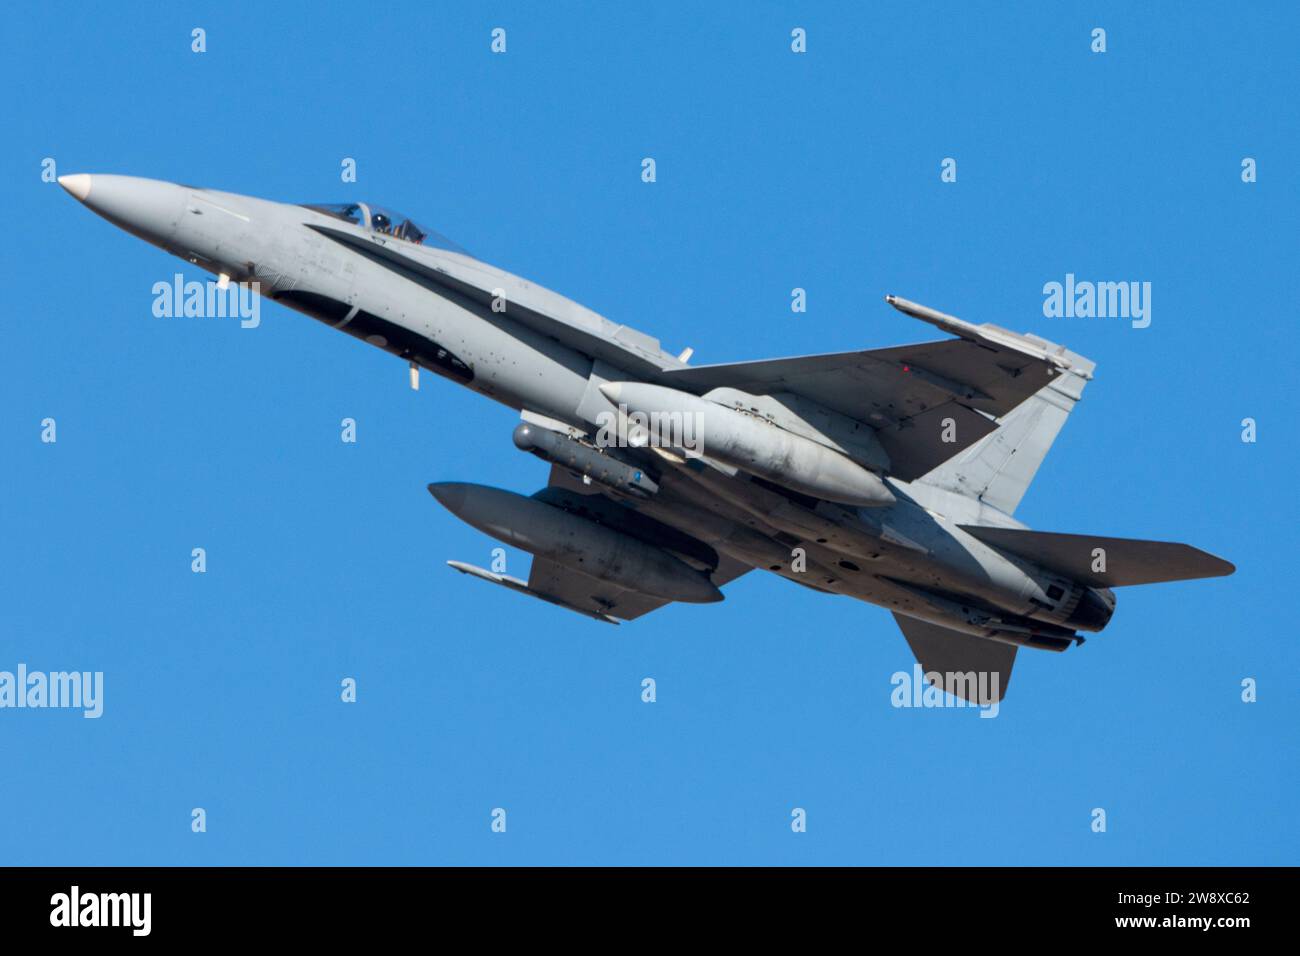 F-18 Hornet fighter plane taking off Stock Photo